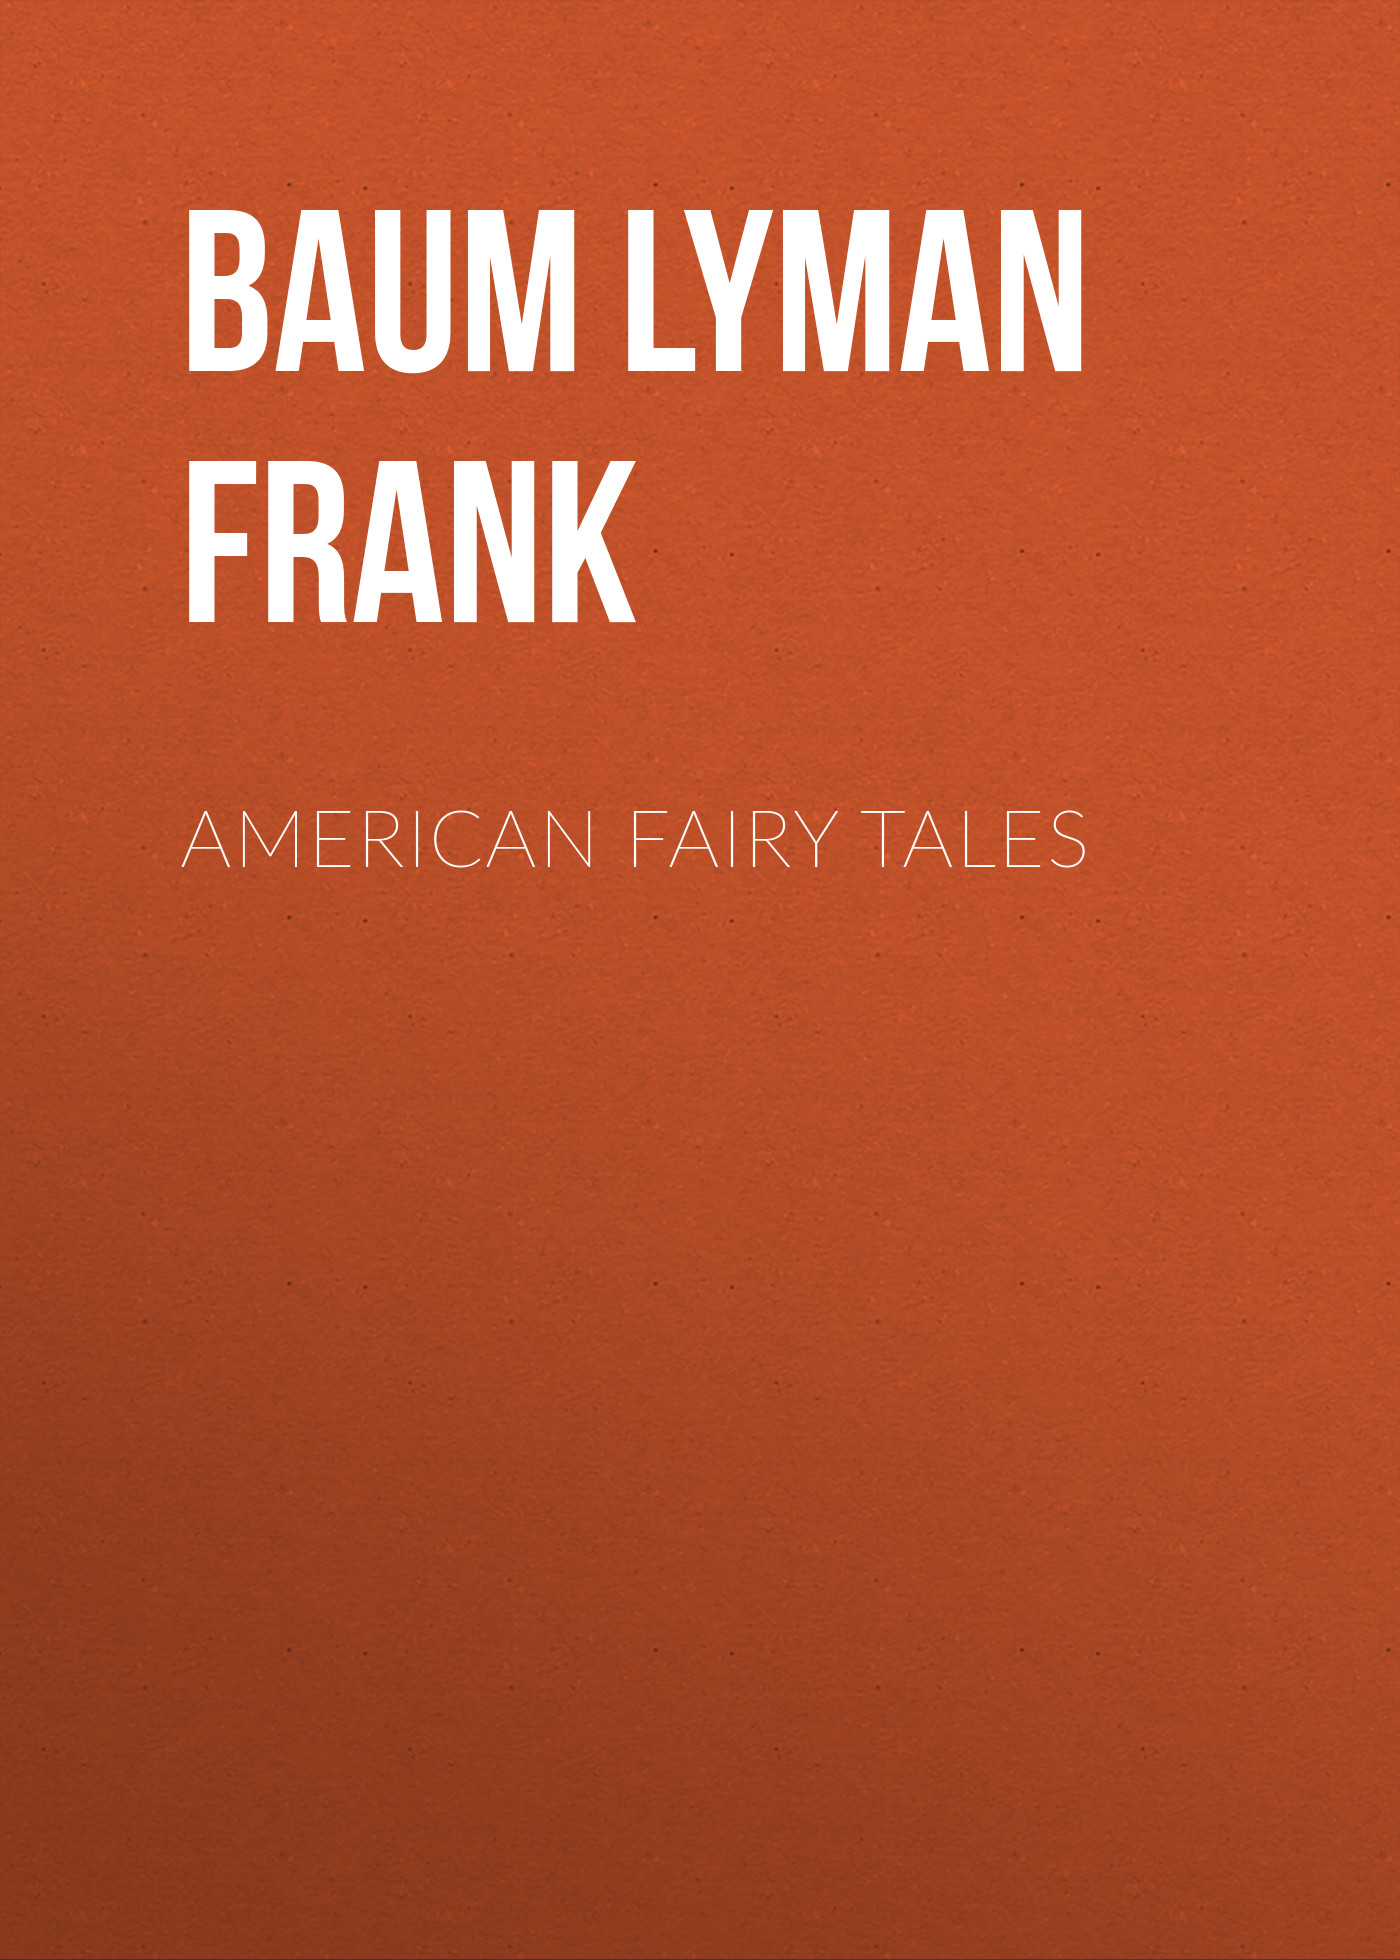 Книга American Fairy Tales из серии , созданная Lyman Baum, может относится к жанру Зарубежная старинная литература, Зарубежная классика. Стоимость электронной книги American Fairy Tales с идентификатором 25020451 составляет 0 руб.